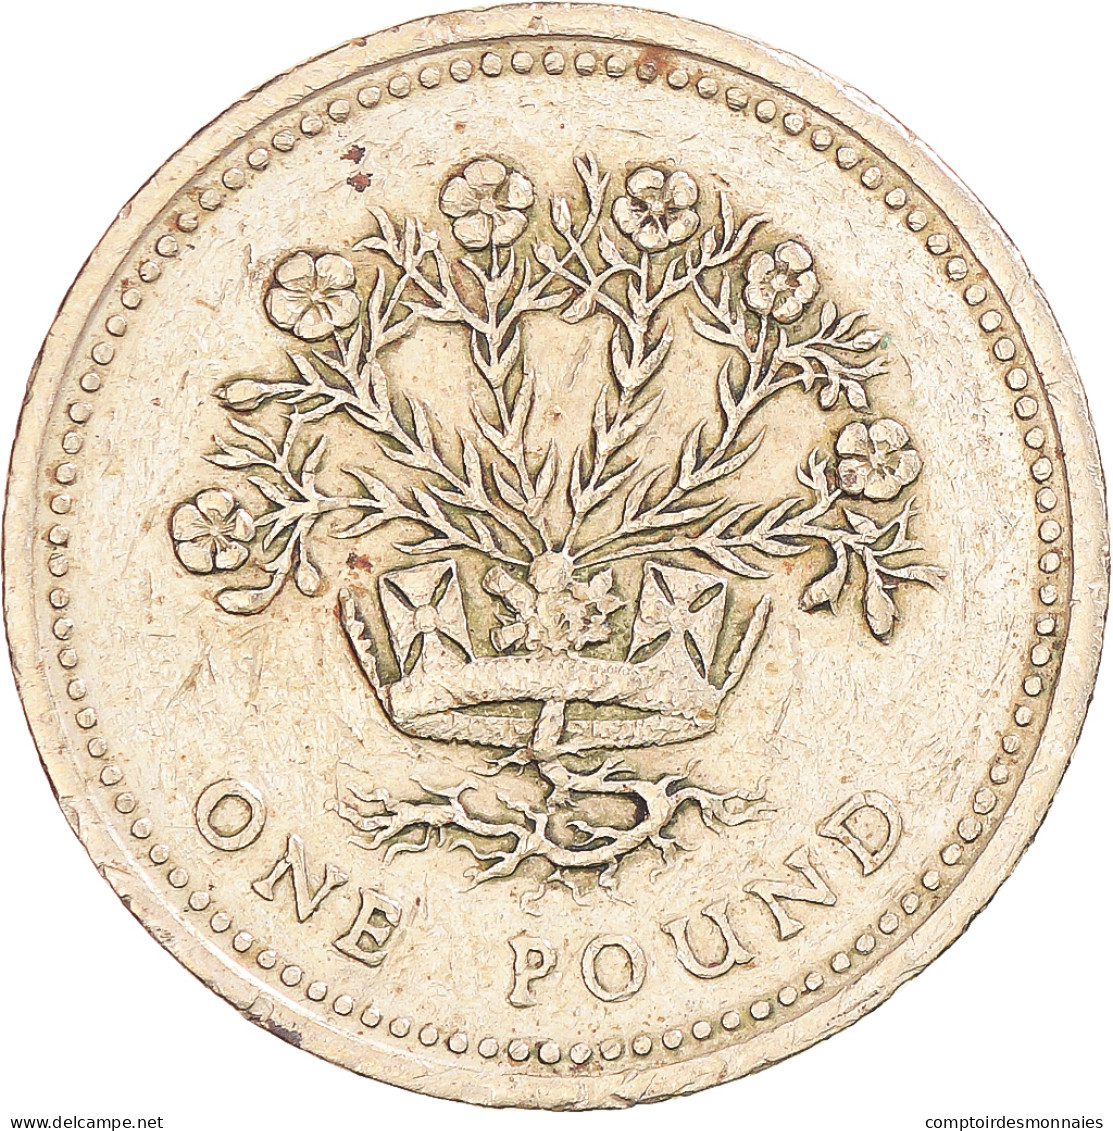 Monnaie, Grande-Bretagne, Pound, 1986 - 1 Pond